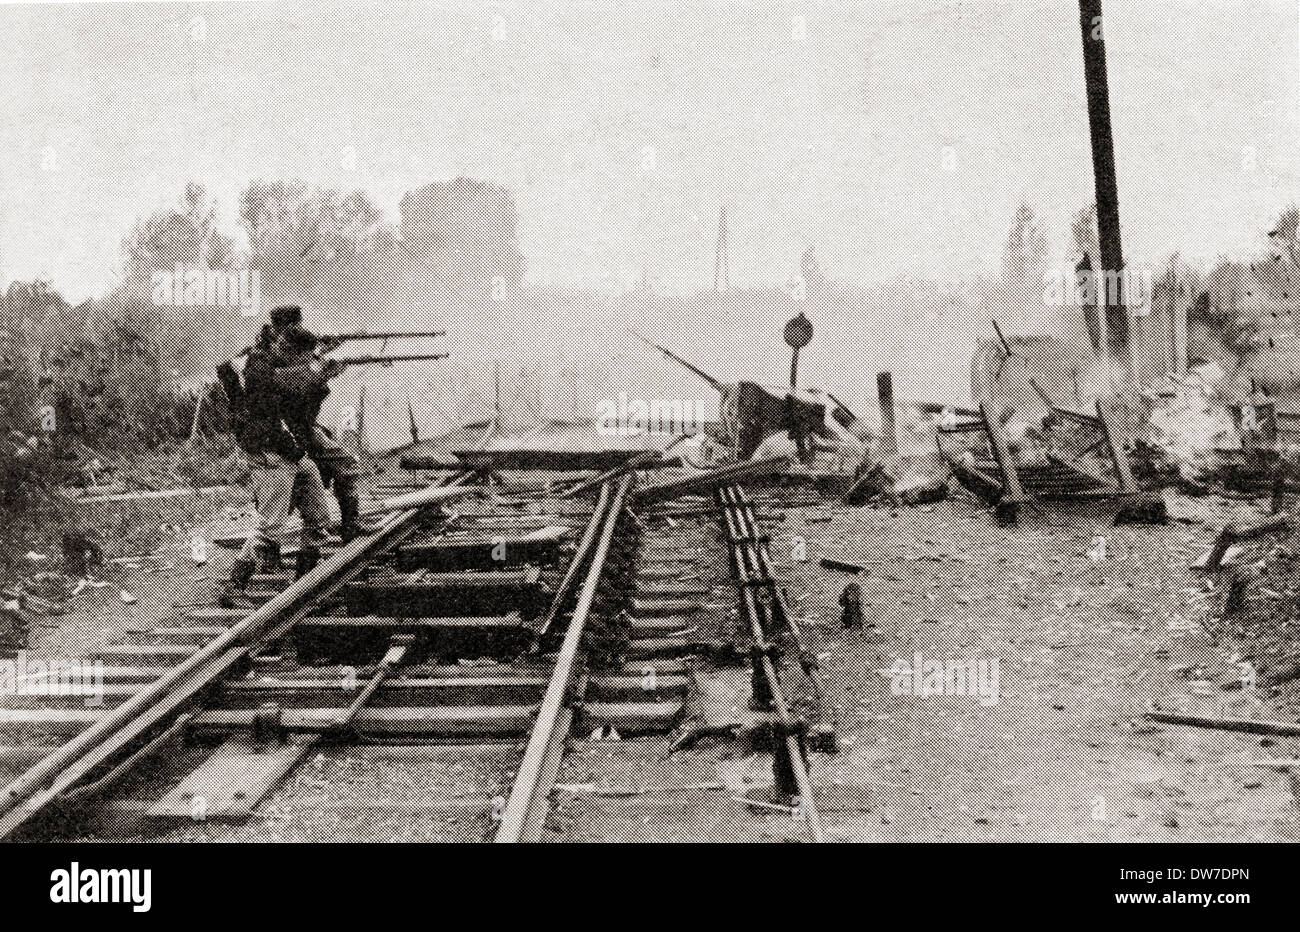 Sur le feu des tireurs d'belge l'ennemi allemand à Termonde, en Belgique au cours de la PREMIÈRE GUERRE MONDIALE. À partir de la guerre d'album Deluxe, publié en 1915. Banque D'Images